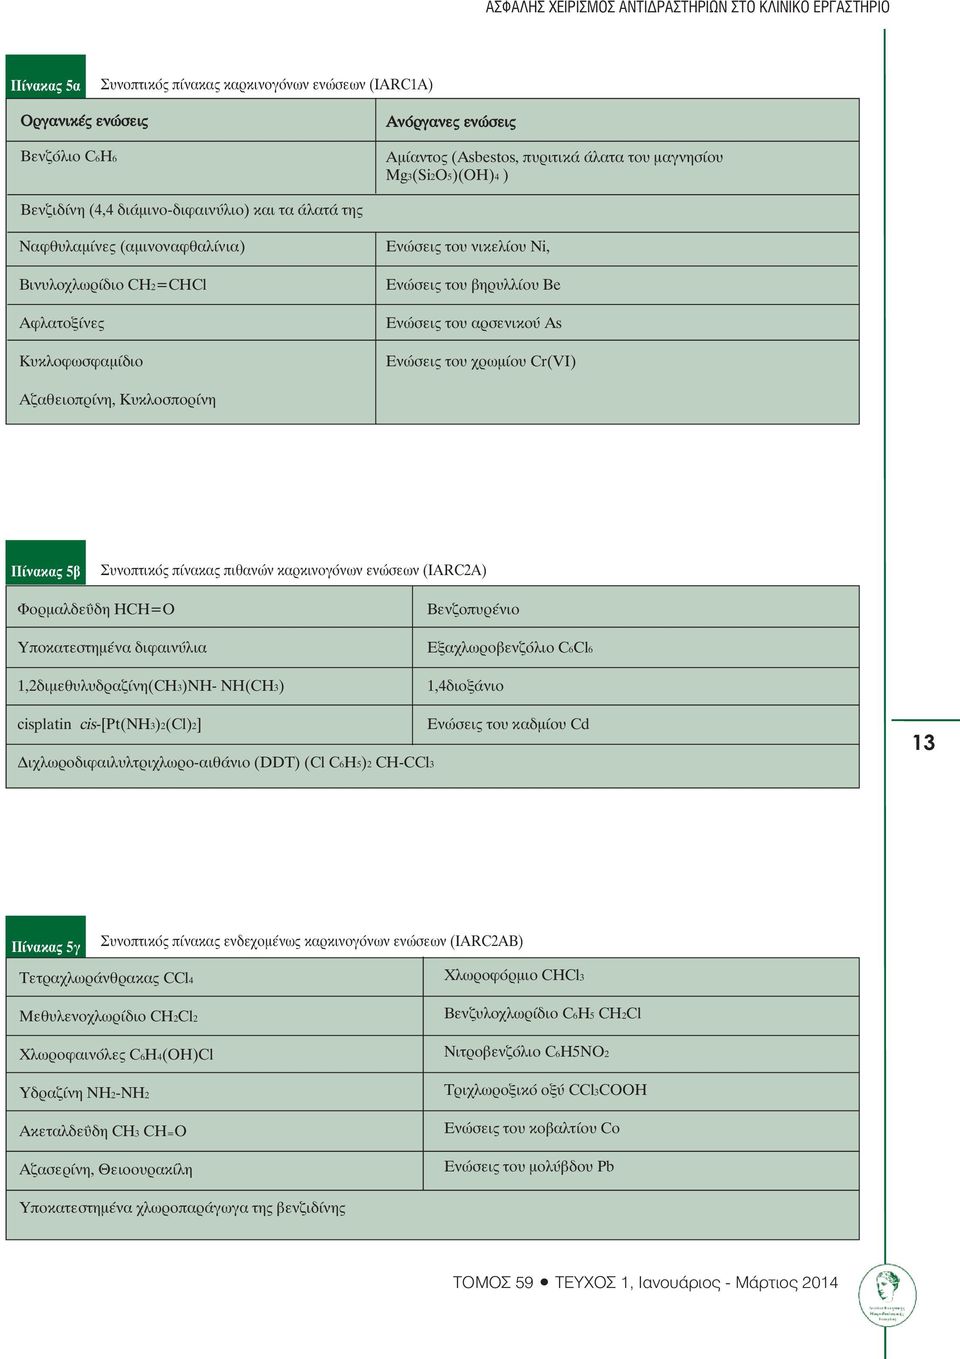 Ενώσεις του βηρυλλίου Be Ενώσεις του αρσενικού As Ενώσεις του χρωµίου Cr(VI) Αζαθειοπρίνη, Κυκλοσπορίνη Πίνακας 5β Συνοπτικός πίνακας πιθανών καρκινογόνων ενώσεων (IARC2A) Φορµαλδεΰδη HCH=O